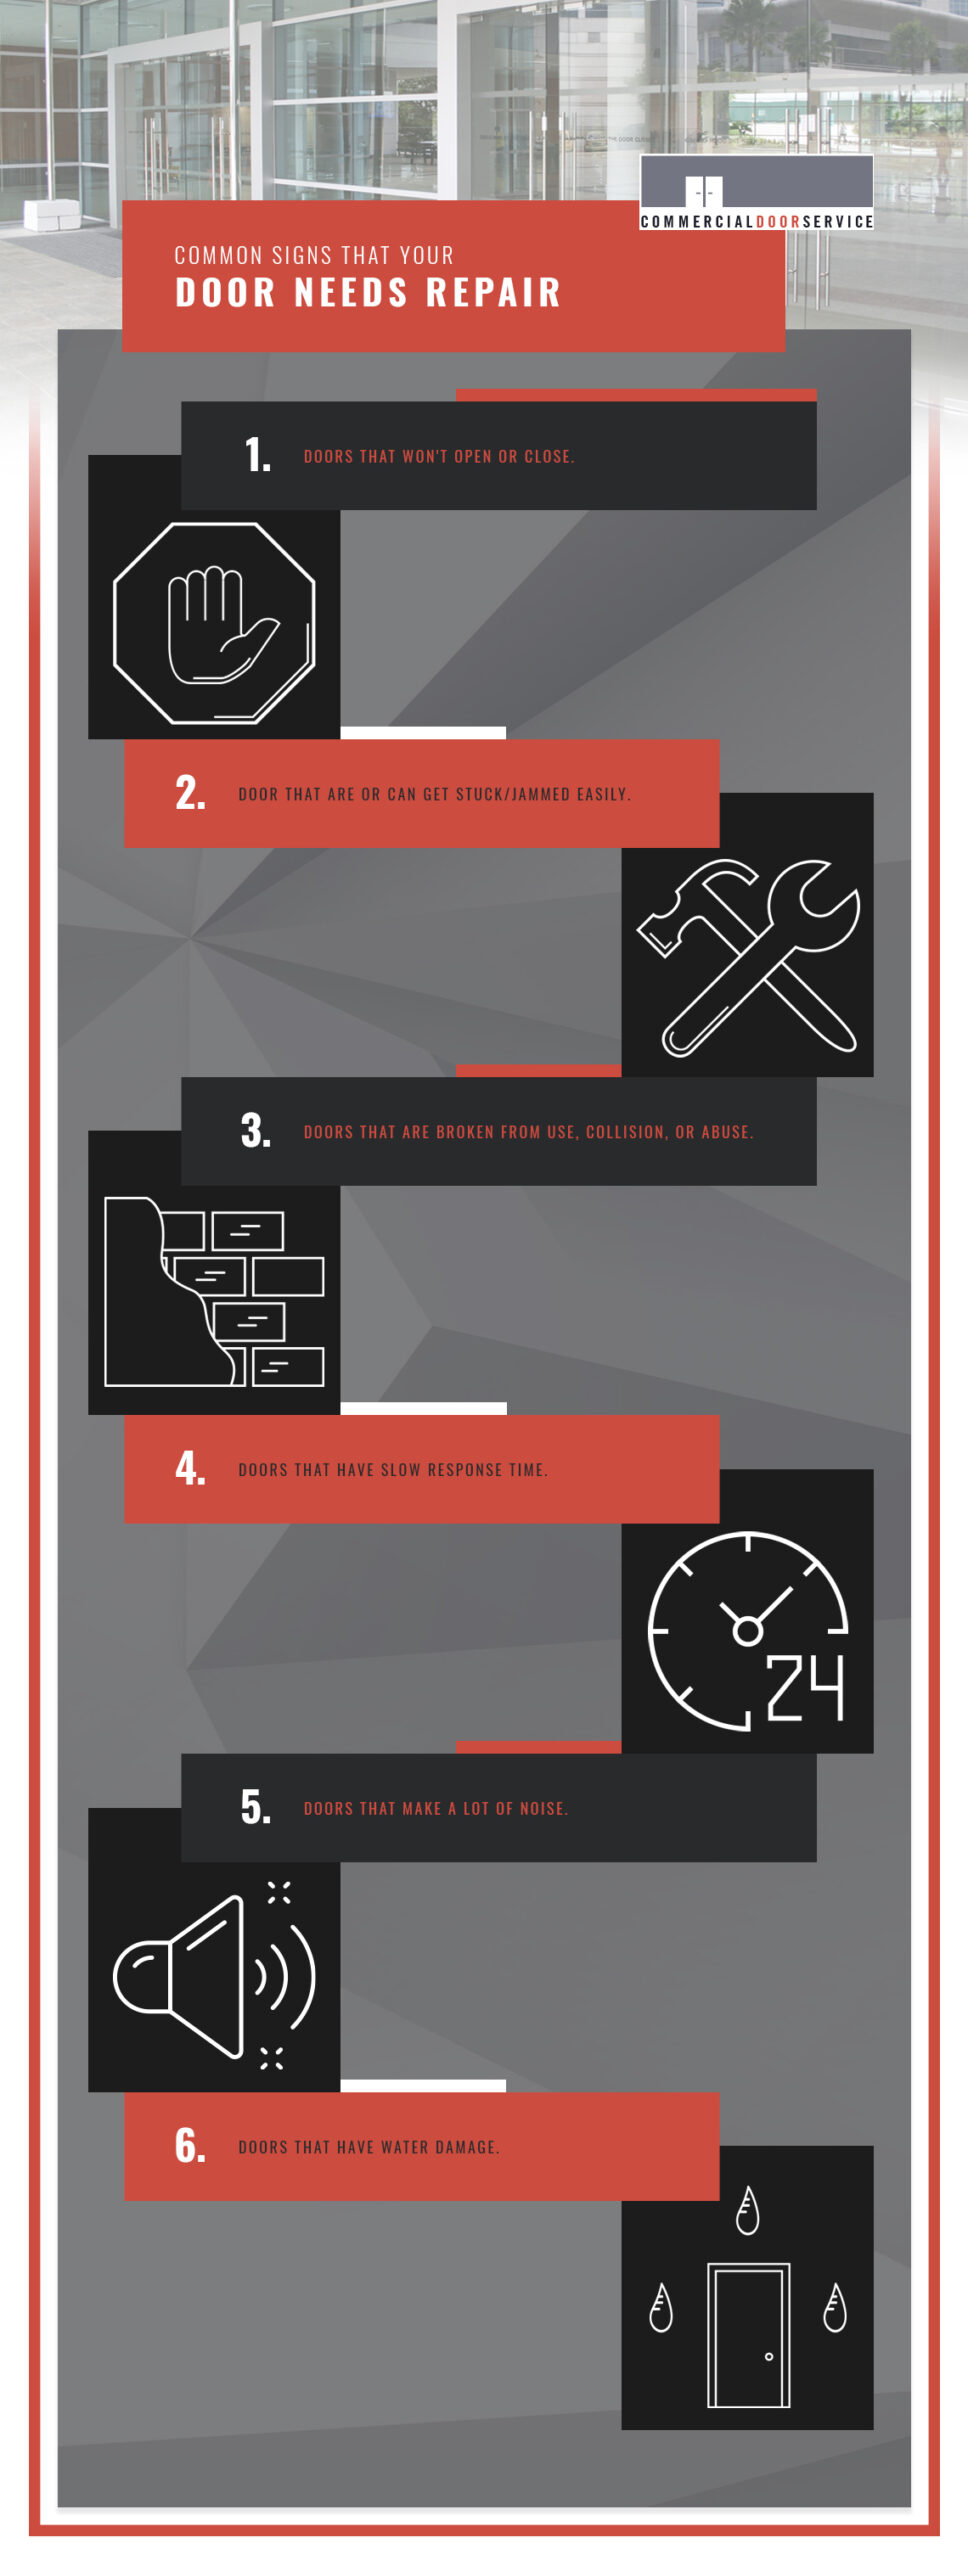 Common Signs That Your Door Needs Repair infographic.